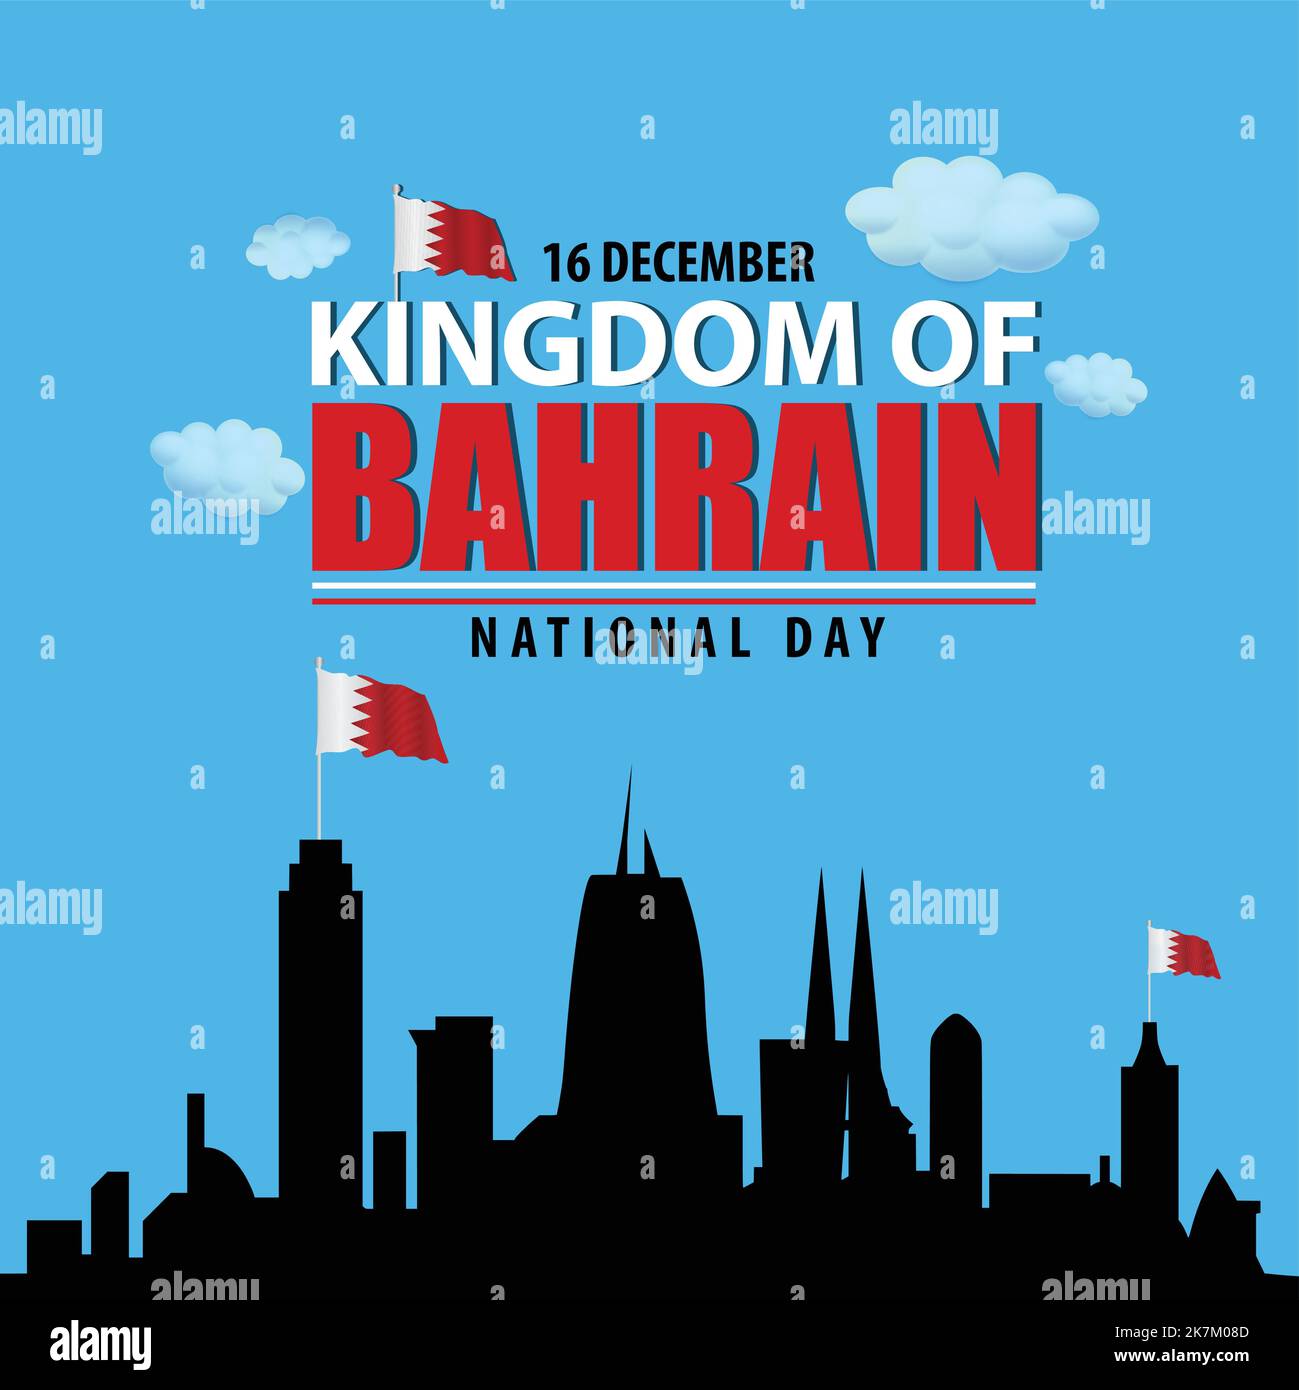 königreich bahrain Nationalfeiertag 16 dezember Typografie mit bahrain Flagge auf Gebäuden Vektor-Kunst Stock Vektor